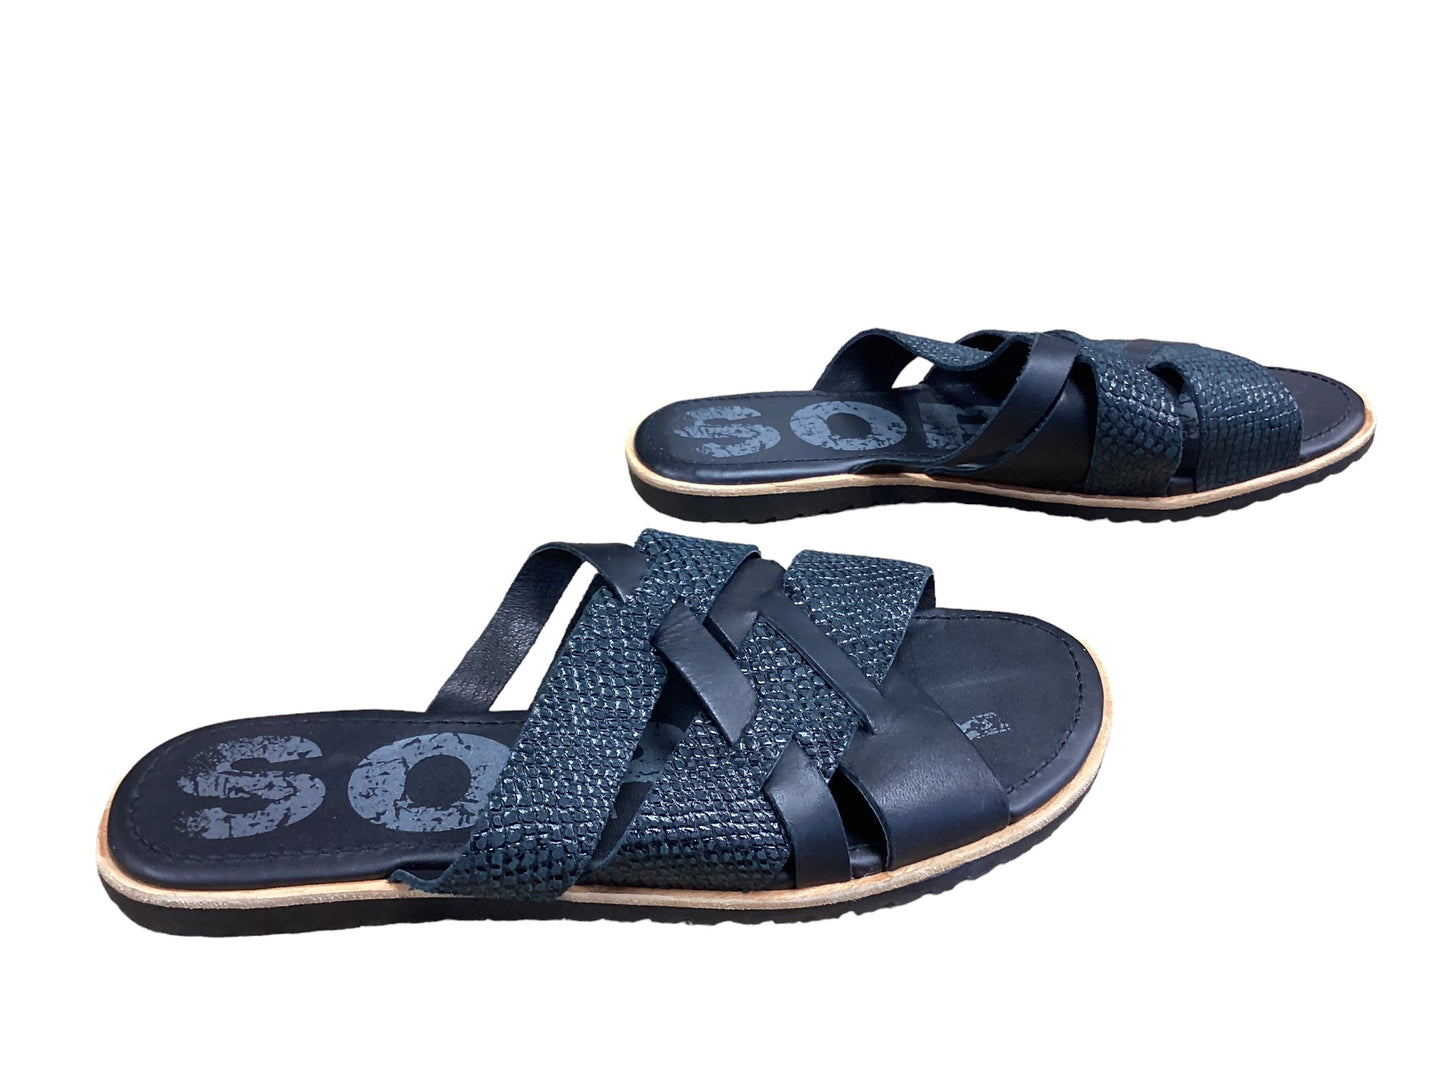 Black Sandals Flats Sorel, Size 8